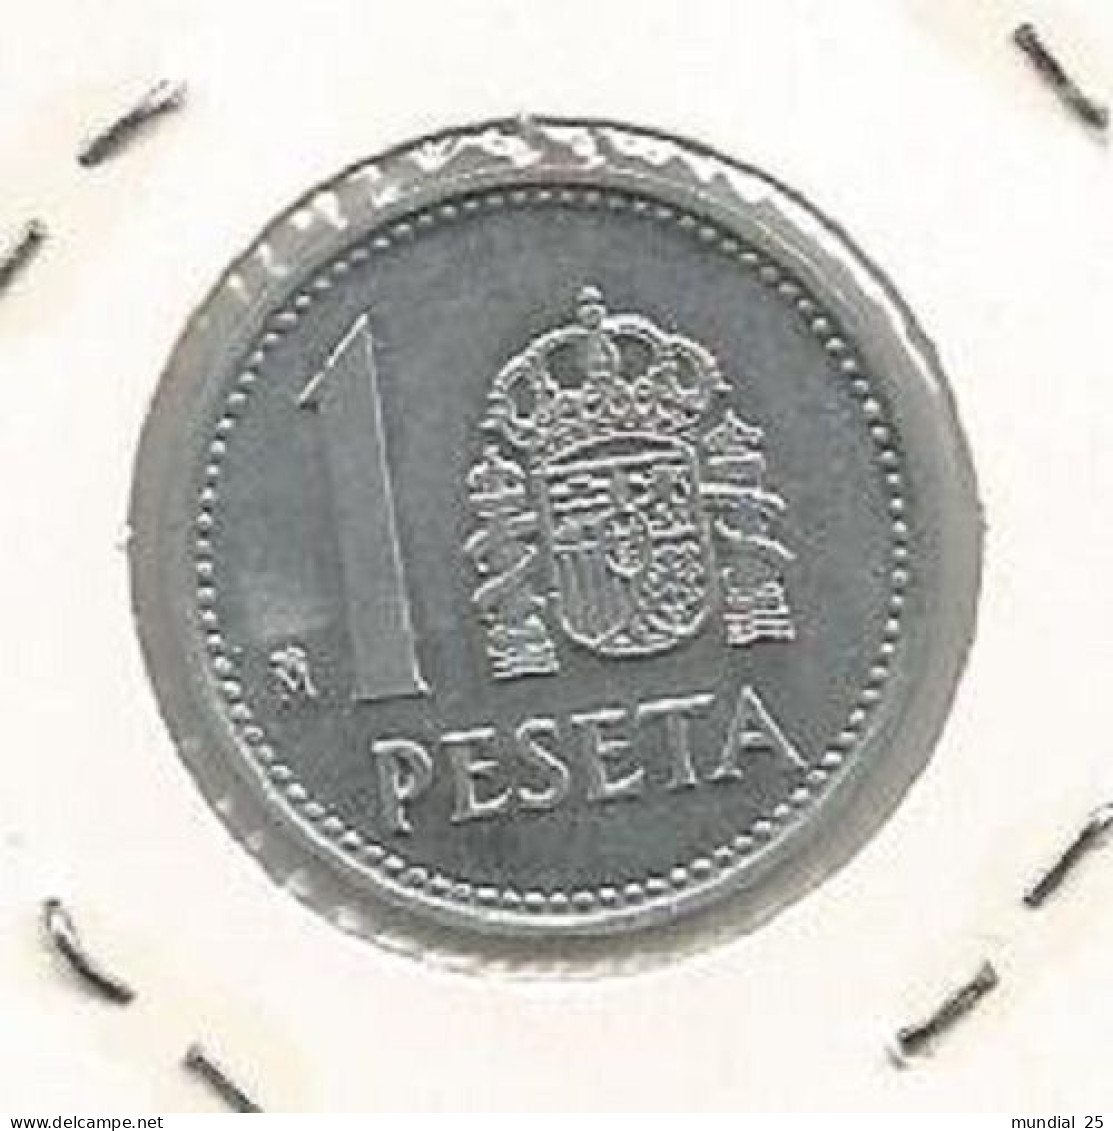 SPAIN 1 PESETA 1988 - 1 Peseta